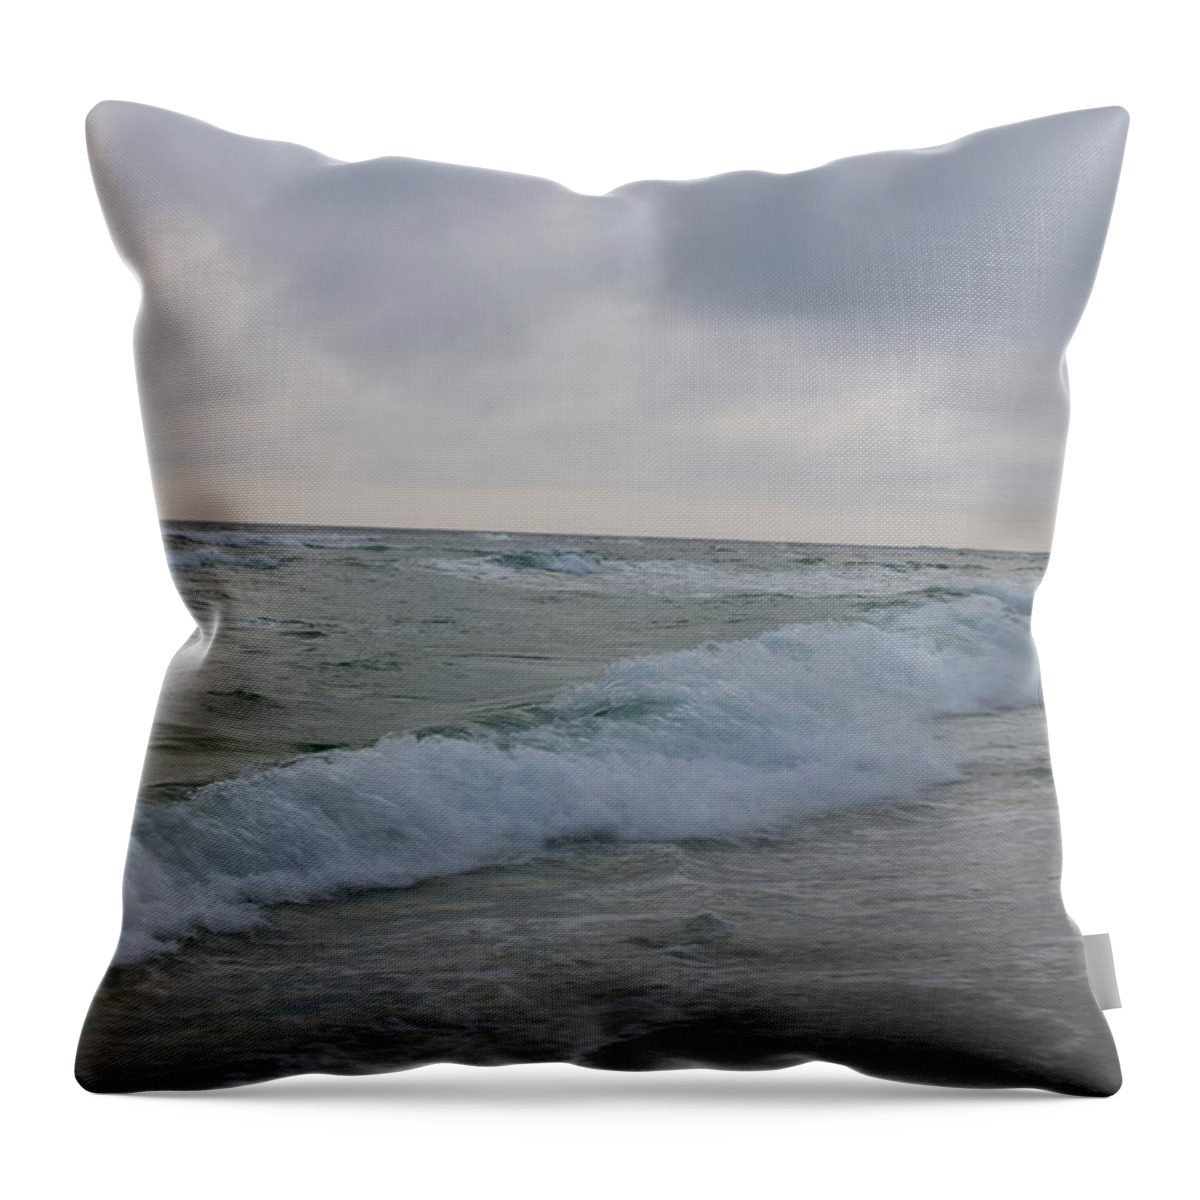 Destin Beach Throw Pillow featuring the photograph Destin Beach VII by Beth Parrish